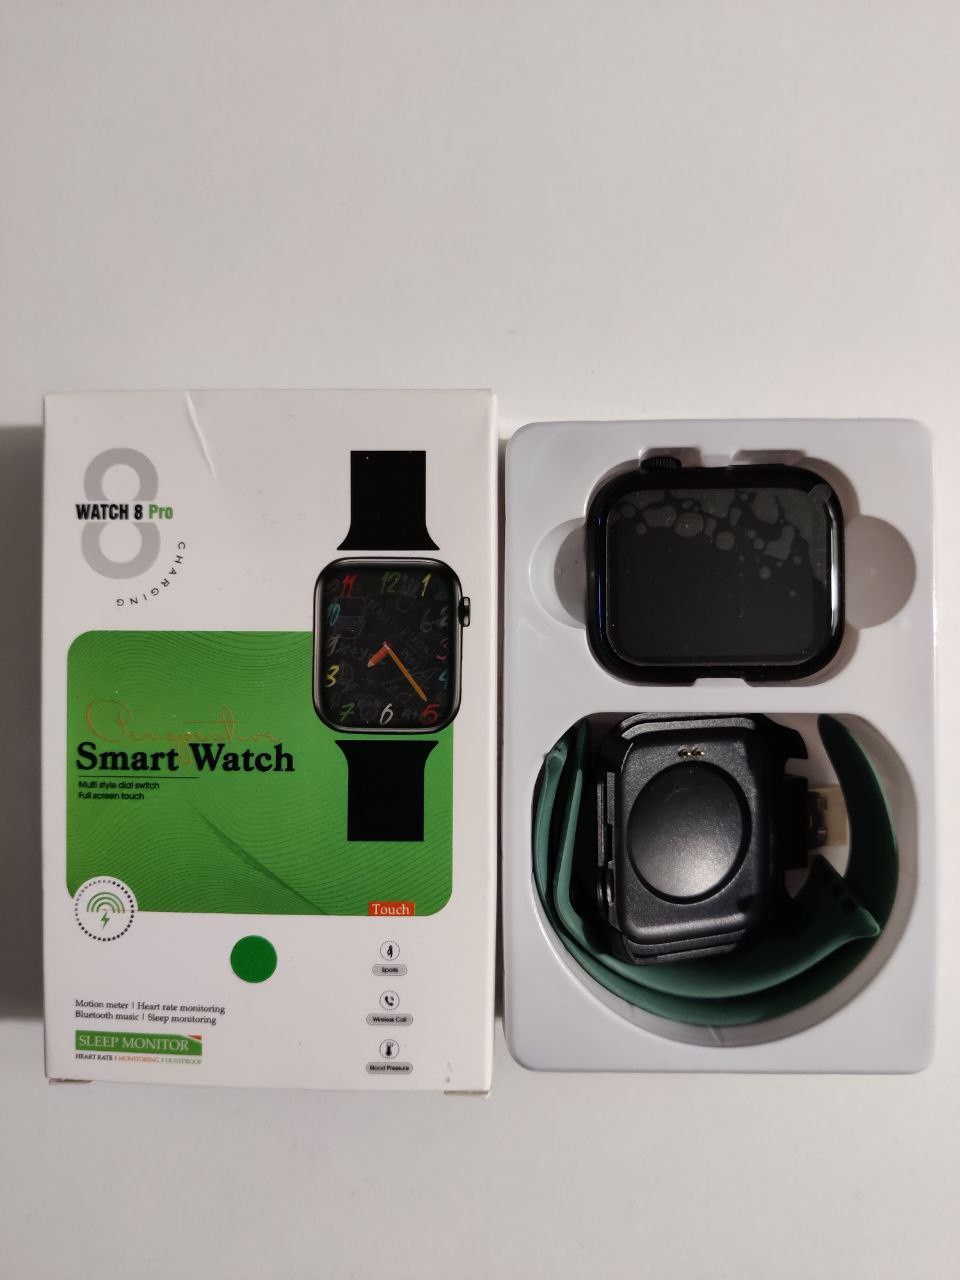 Zagadki Smart watch 8 pro